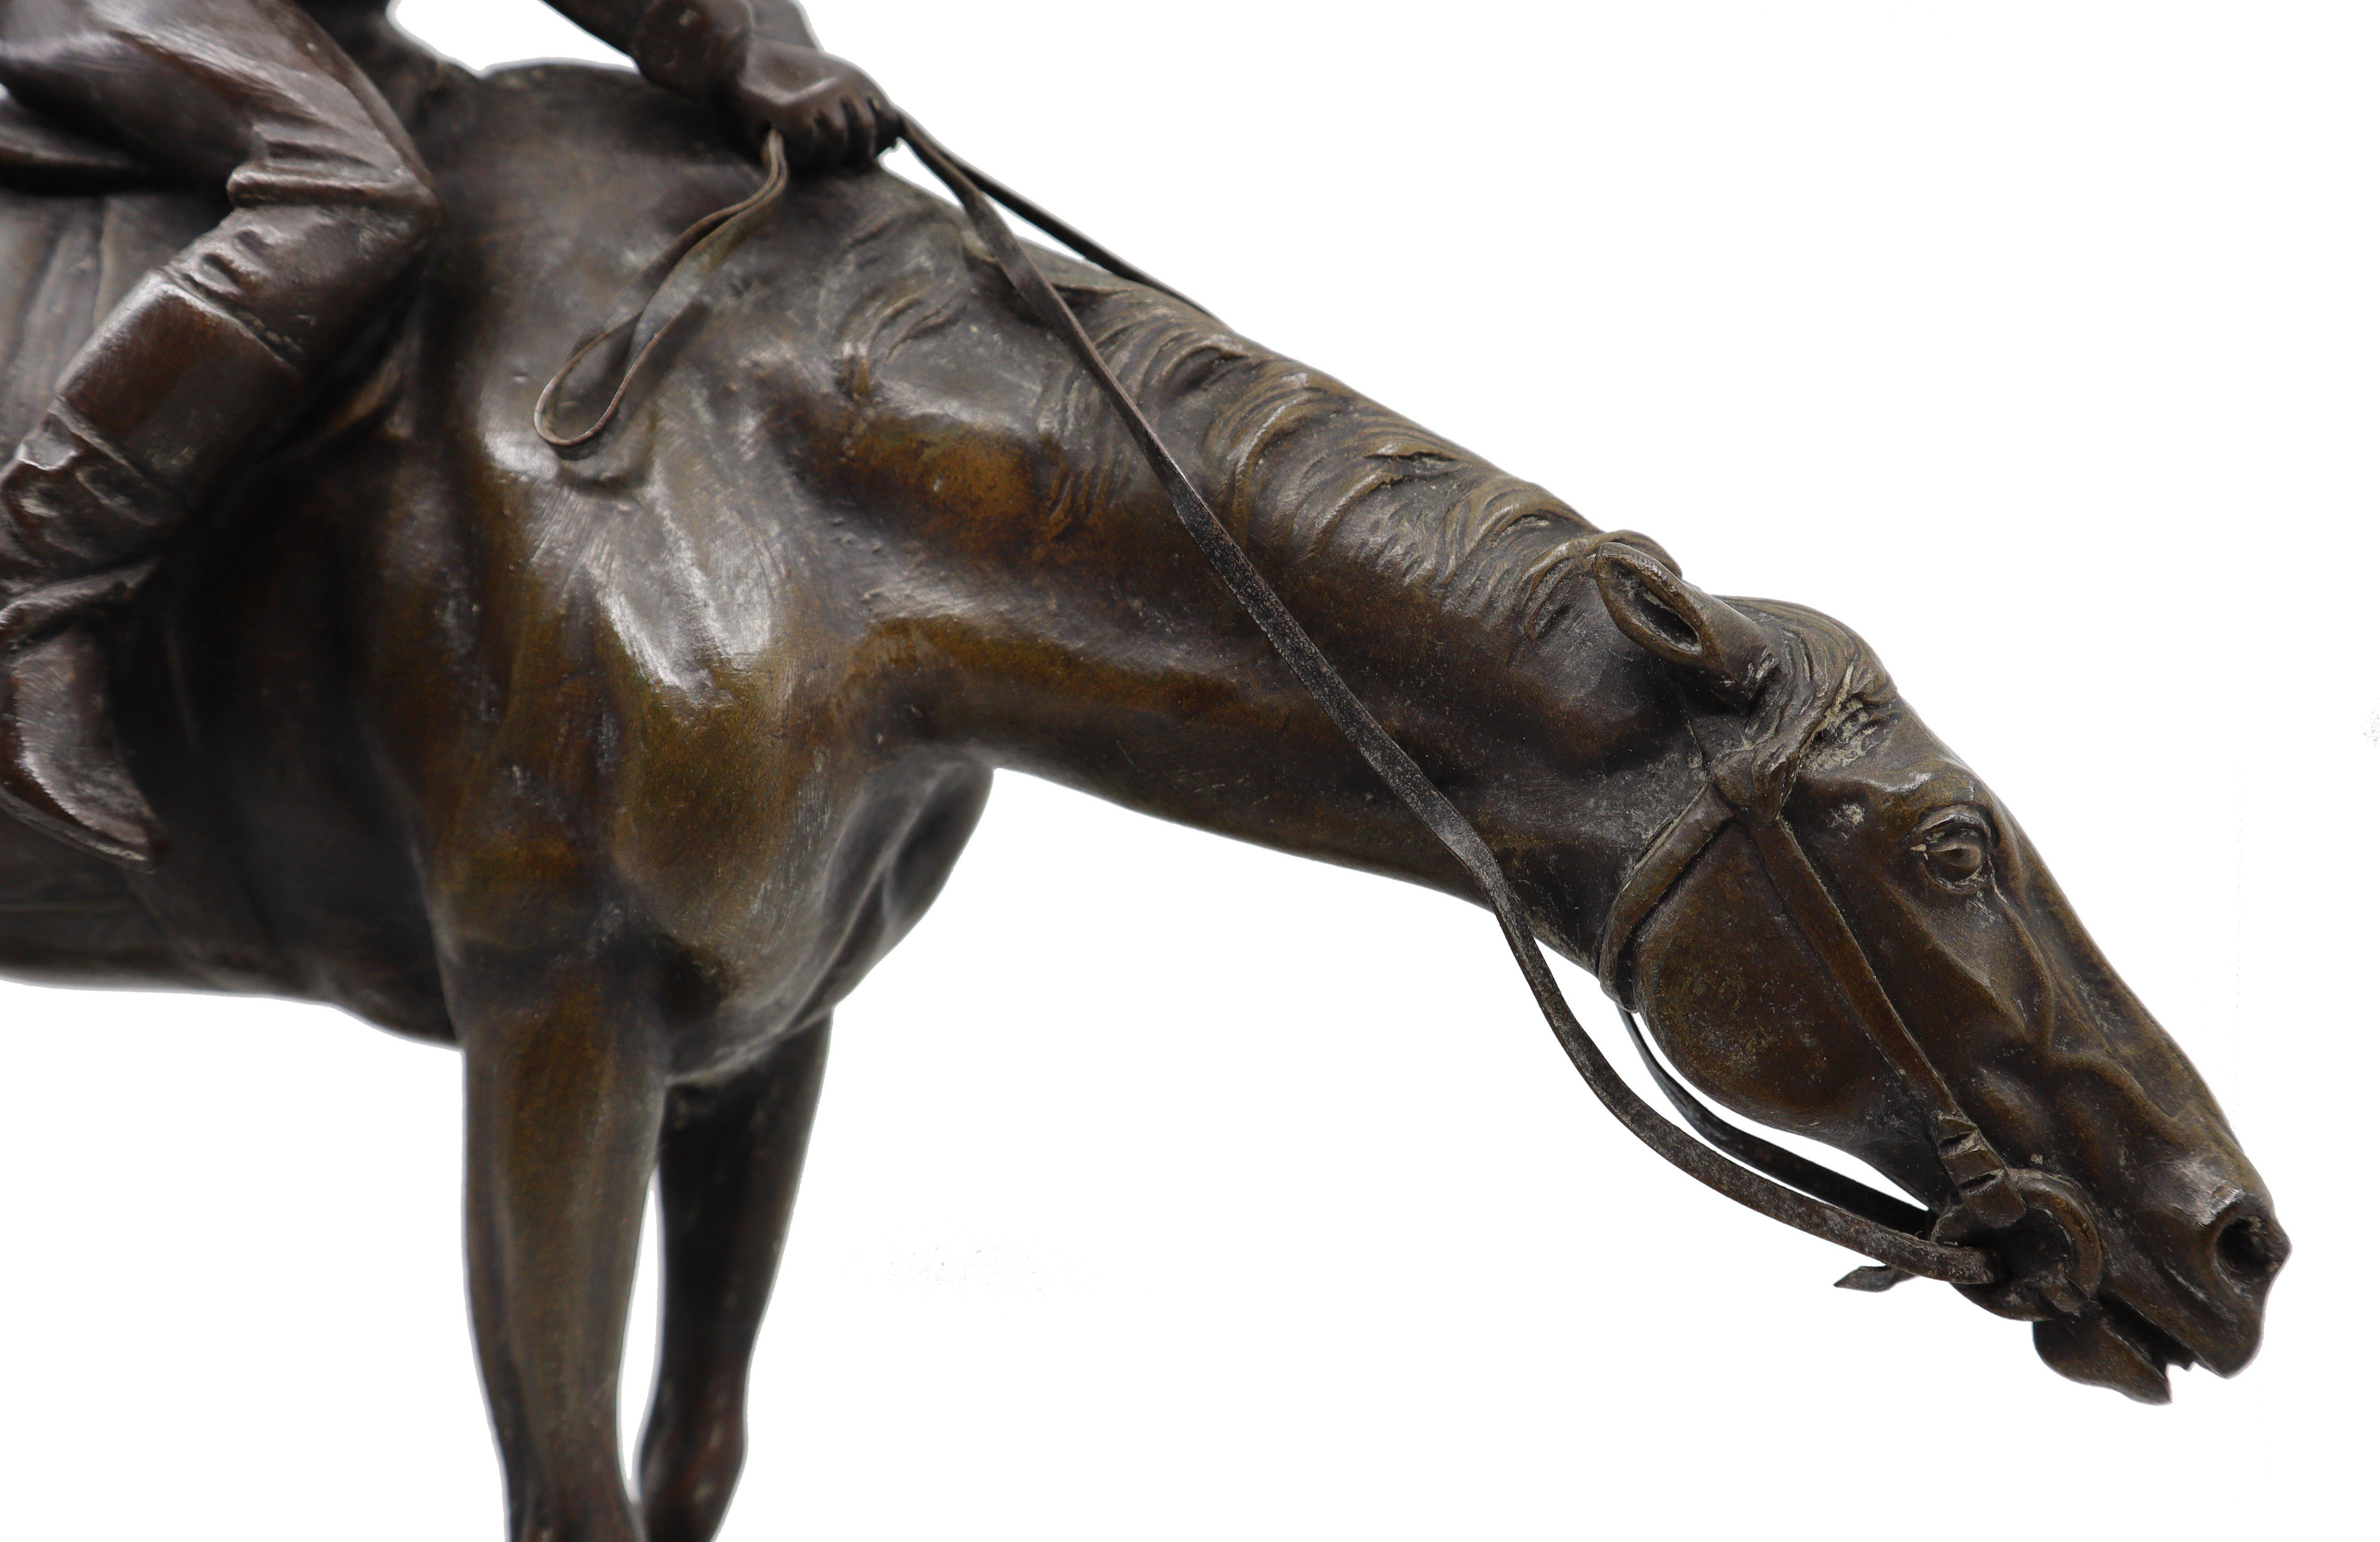 Statue équestre en bronze représentant un jockey sur son cheval, réalisée par le sculpteur italien G. Ferrari au 19e siècle.  
Giuseppe Ferrari est un sculpteur italien né en 1843. Ses œuvres représentent des personnages et des groupes de manière